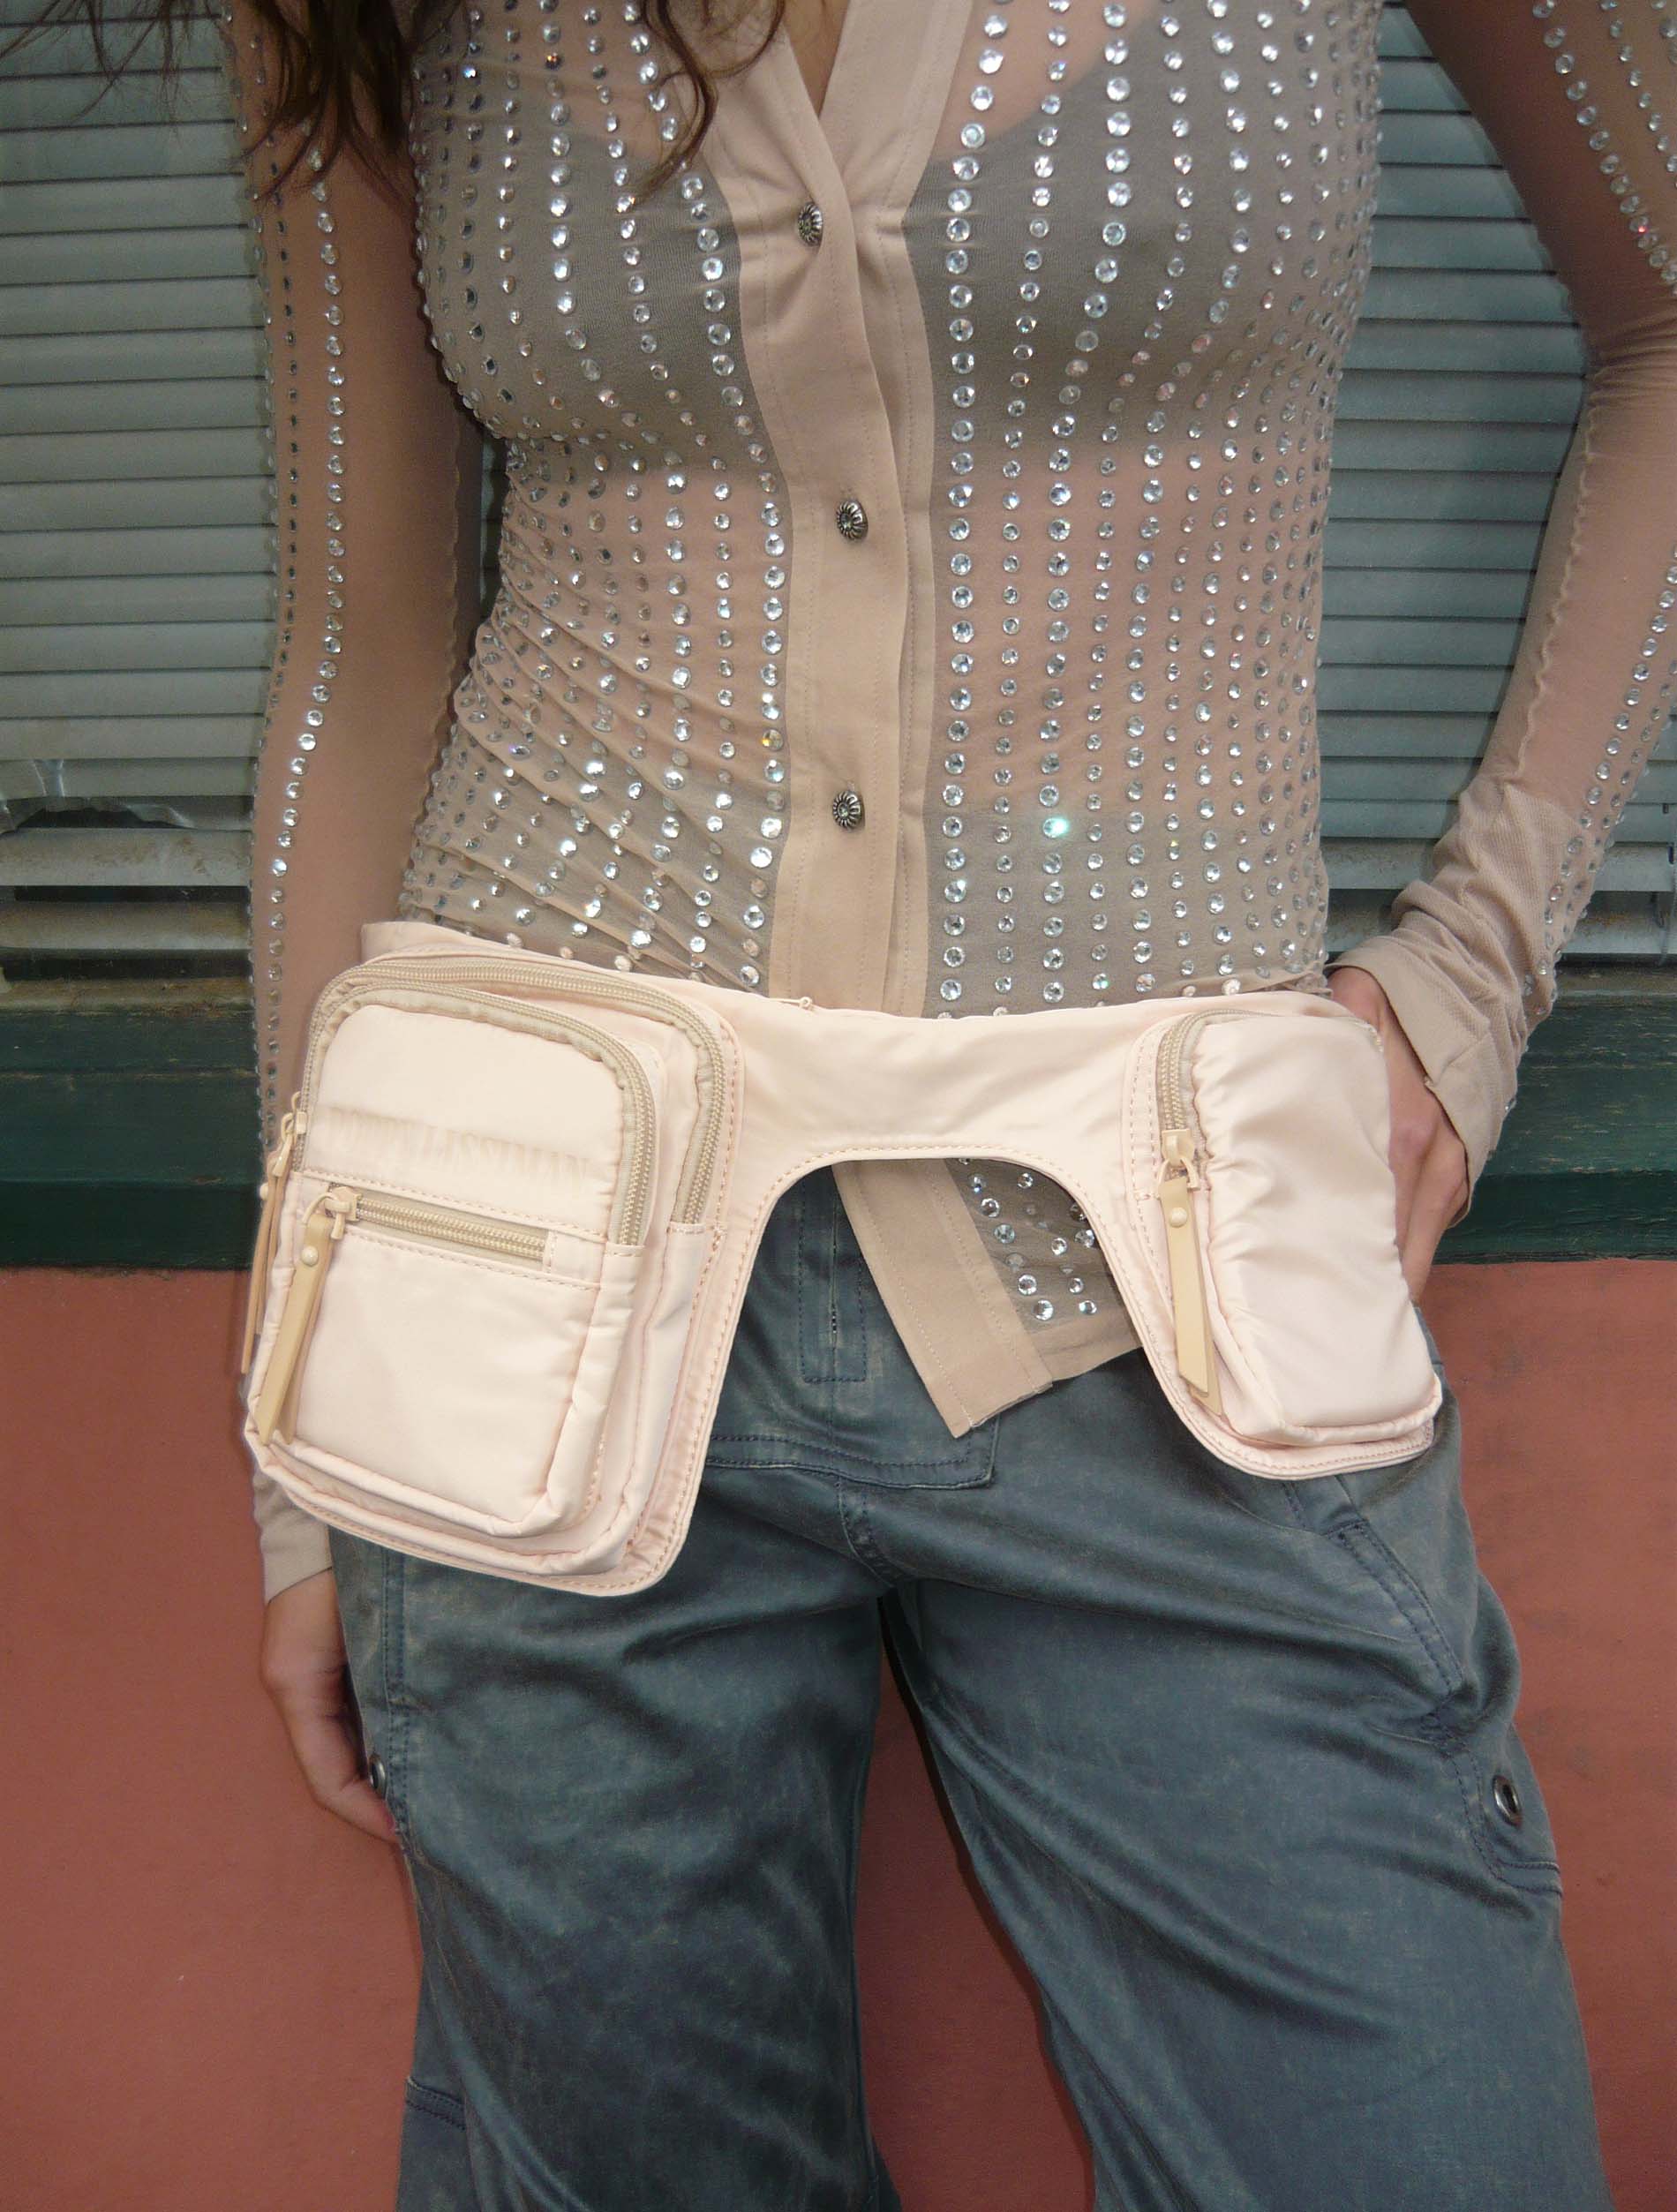 Poppy Faux Leather Fanny Pack Belt Bag Phone Pouch Waist Bag Chest Bag  Shoulder Purse for Men Women 